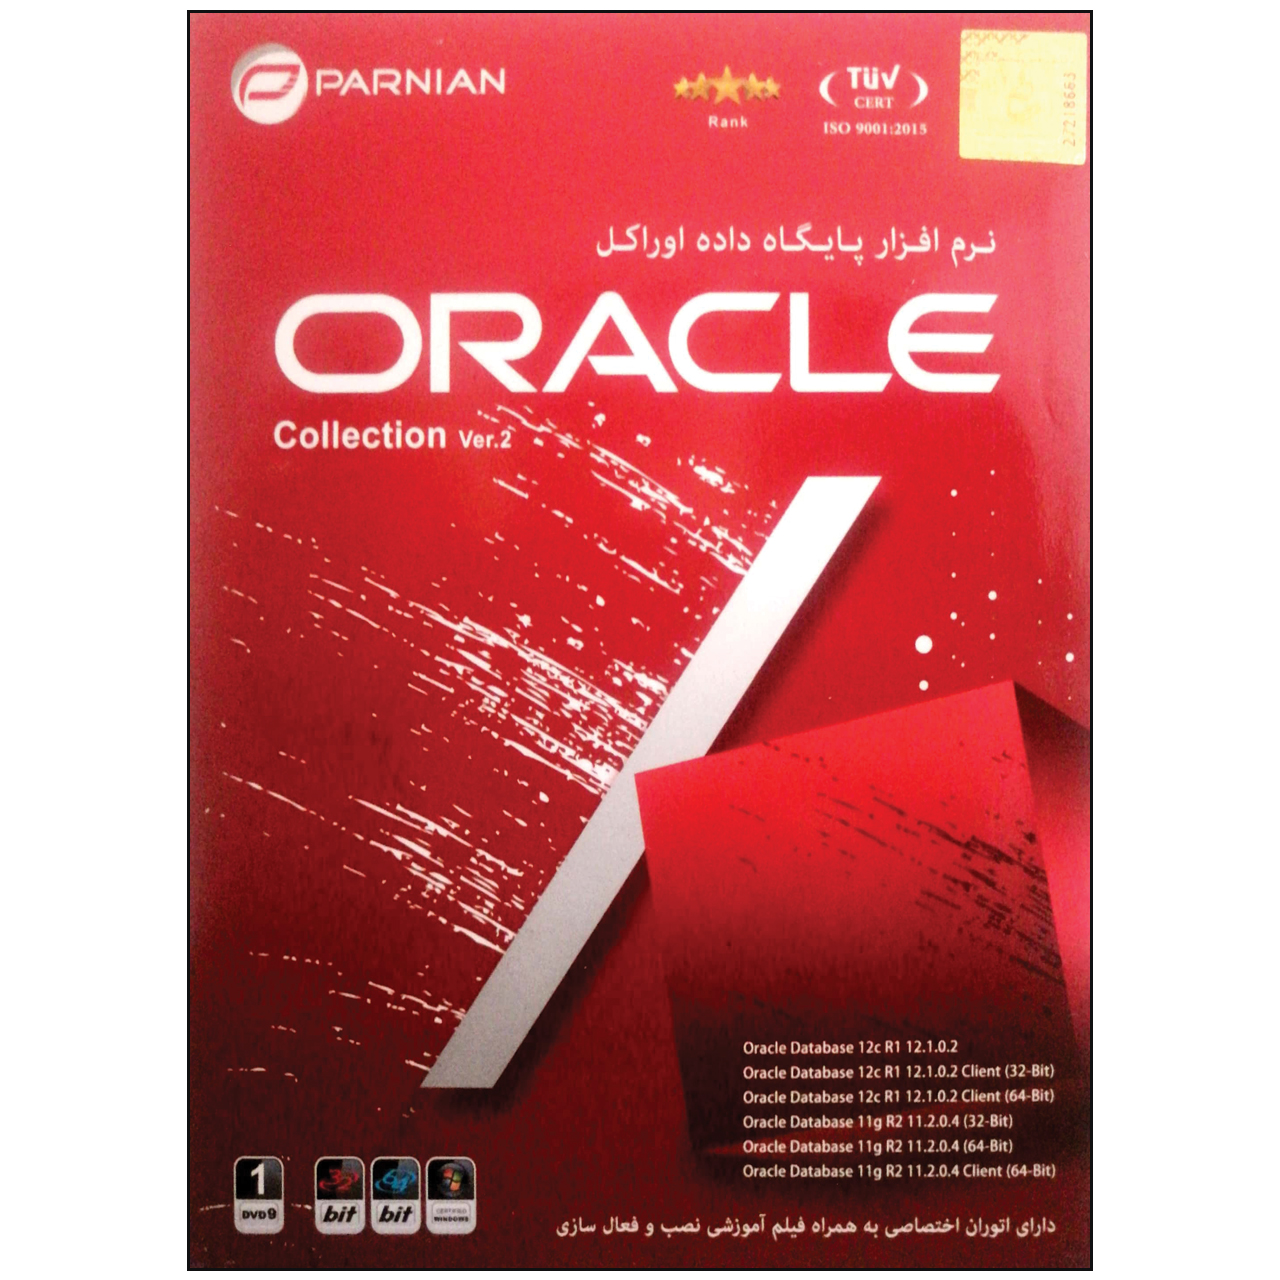 نرم افزار Oracle Collection نشر پرنیان